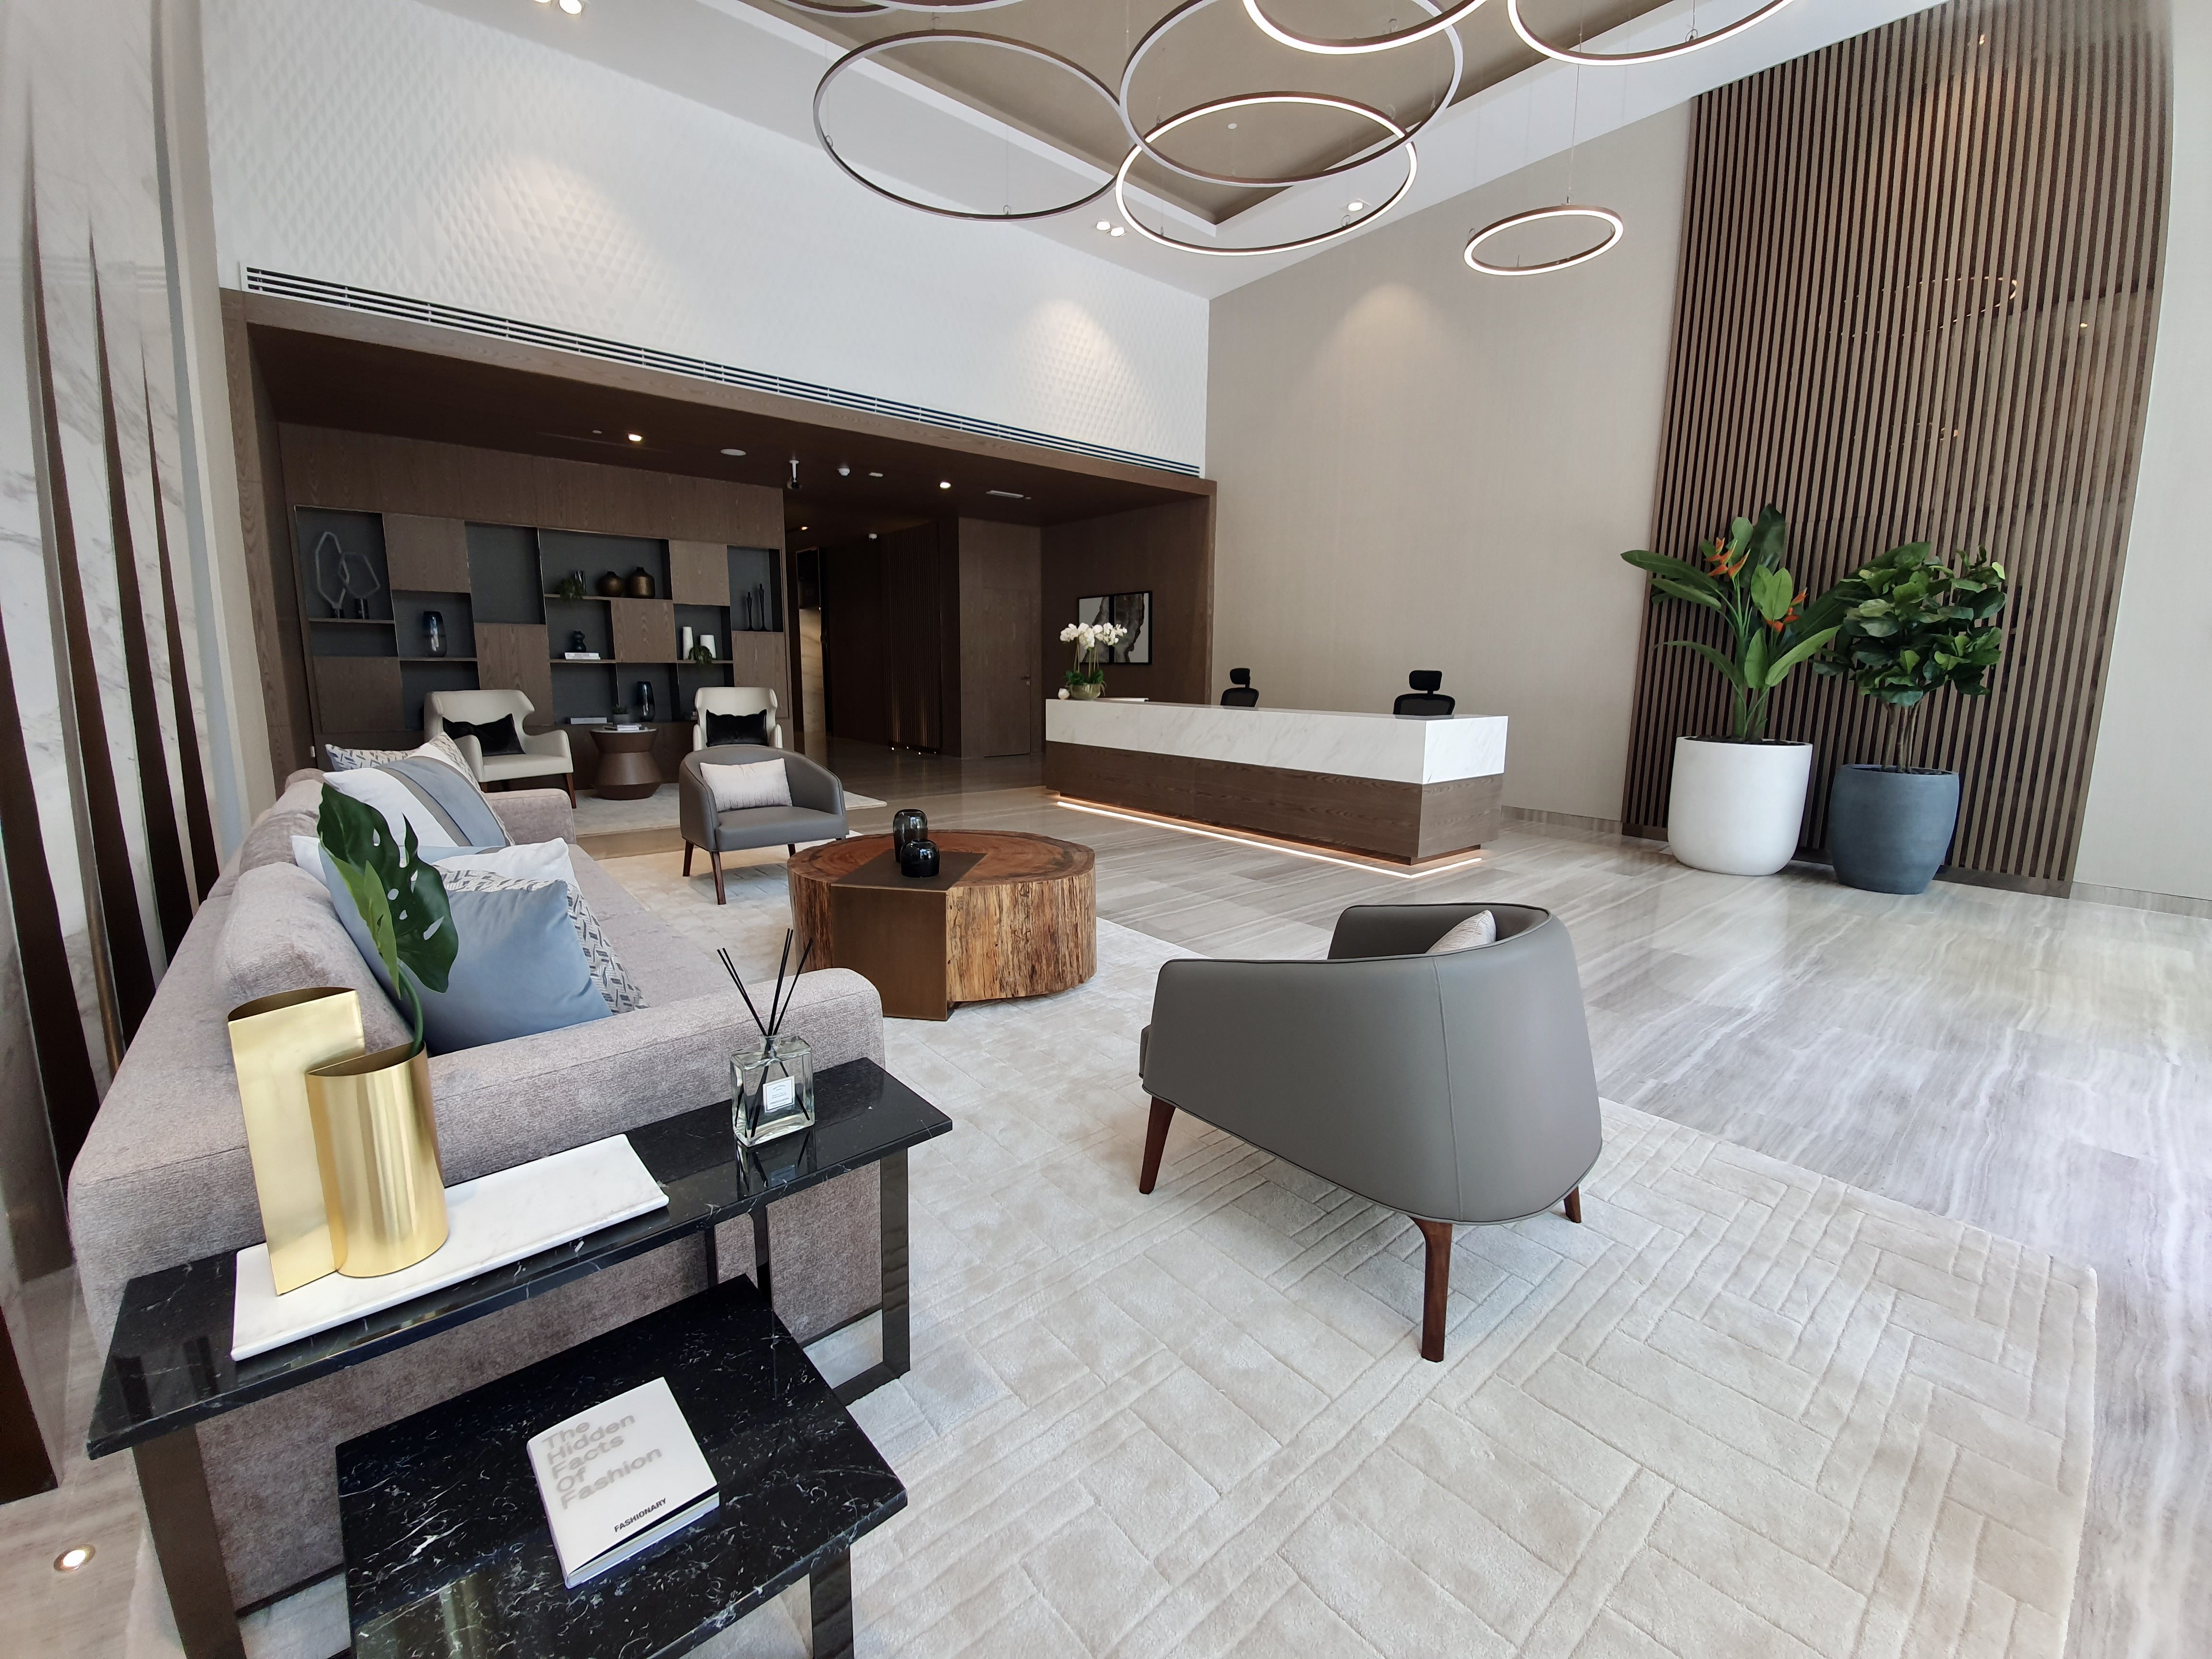 Top 10 interior design companies in Dubai, UAE